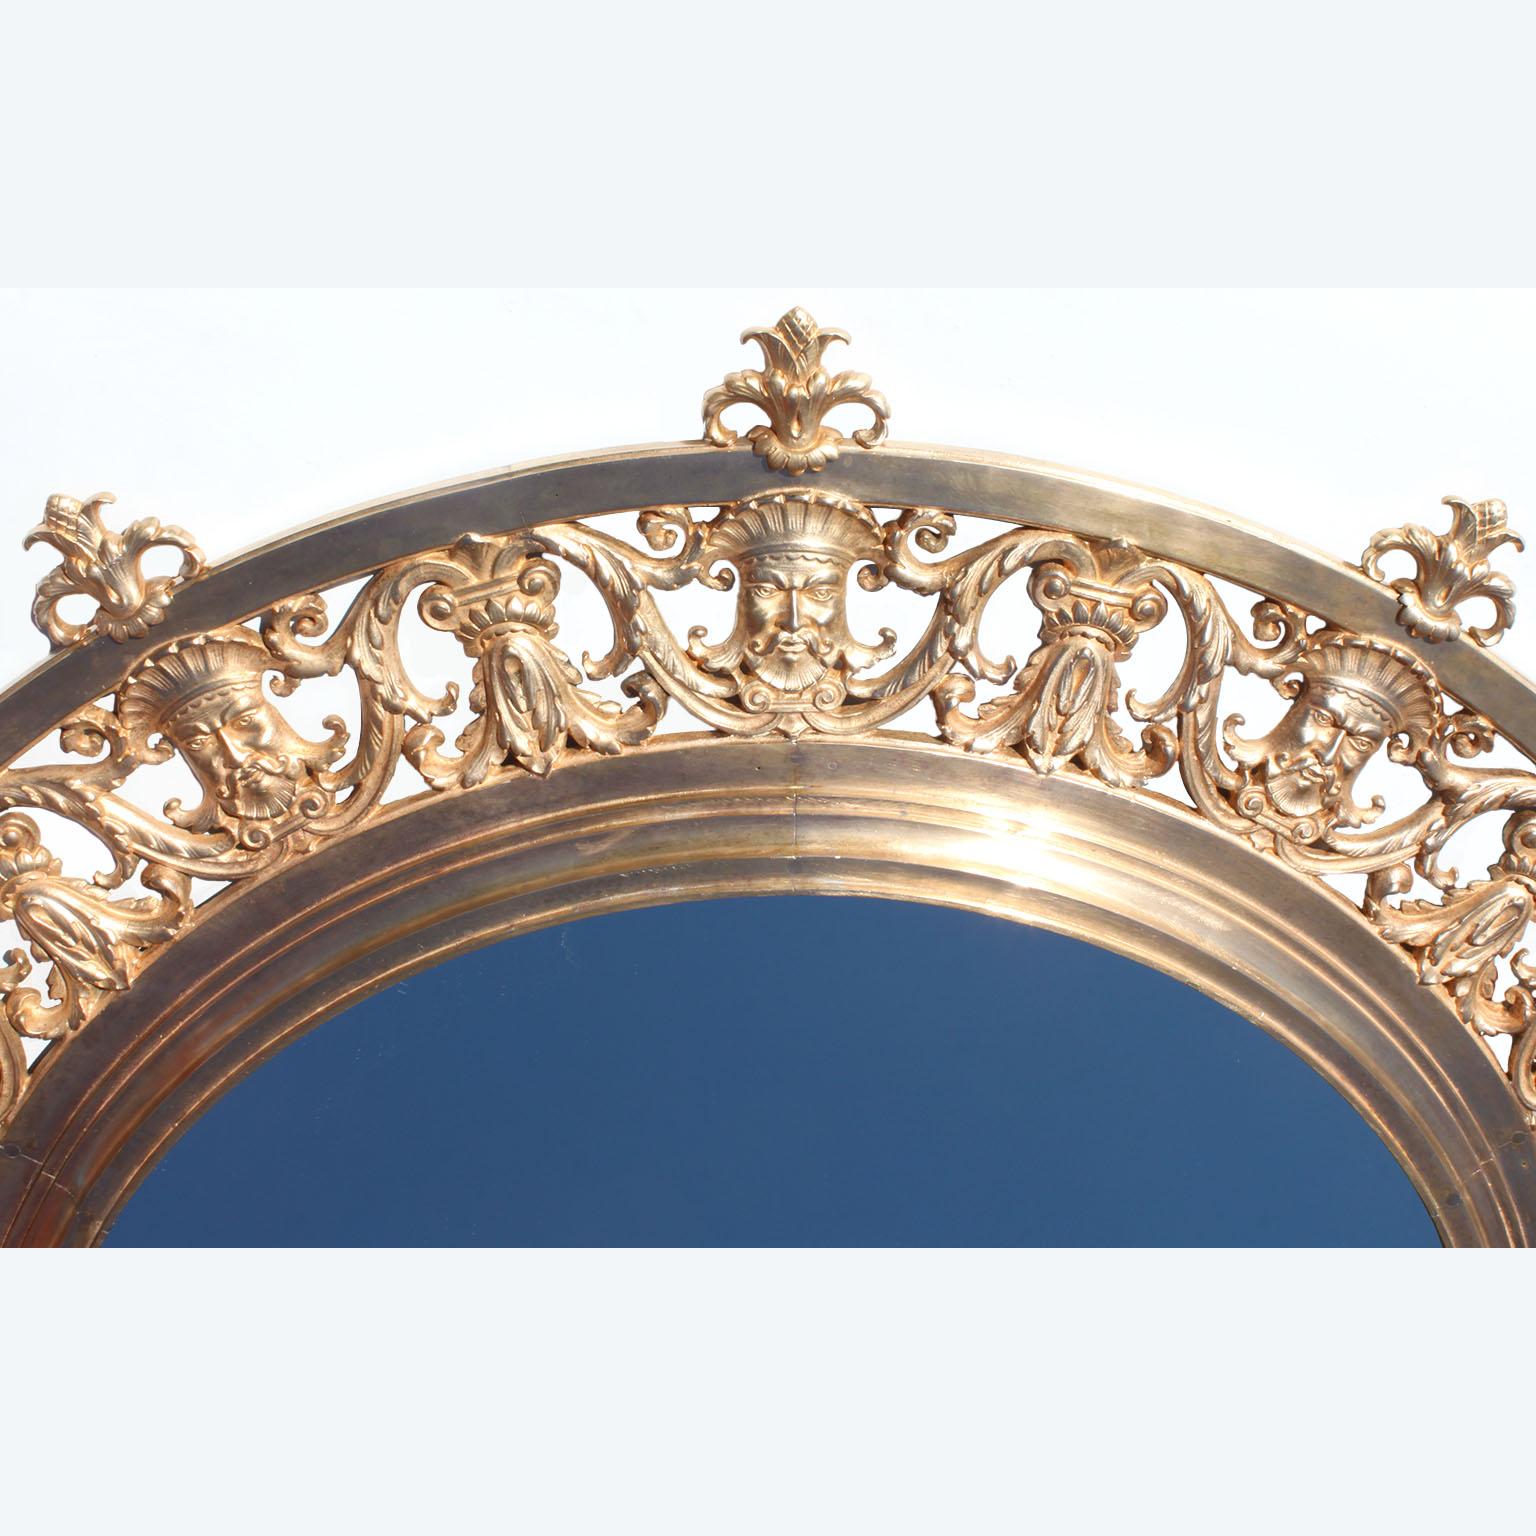 Un beau et grand miroir circulaire de style néo-baroque en bronze doré du XIXe siècle. Le cadre en bronze doré, orné d'un décor de masques masculins allégoriques surmontés de glands, est percé d'un feuillage à enroulements et centré d'un miroir